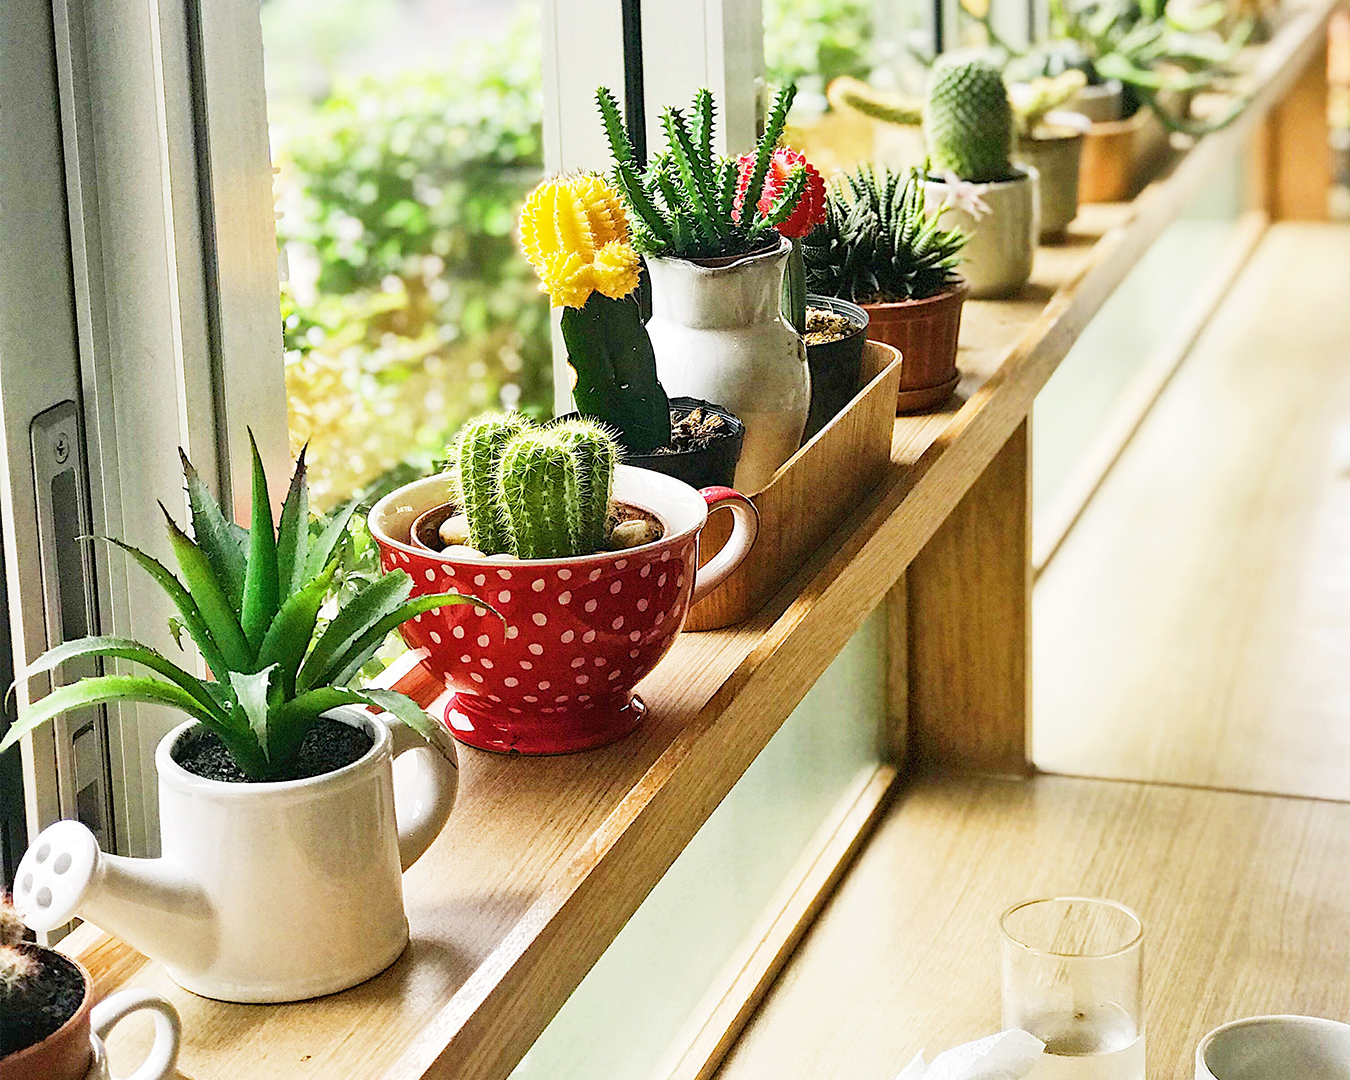  La guida completa alla scelta del vaso migliore per le vostre piante